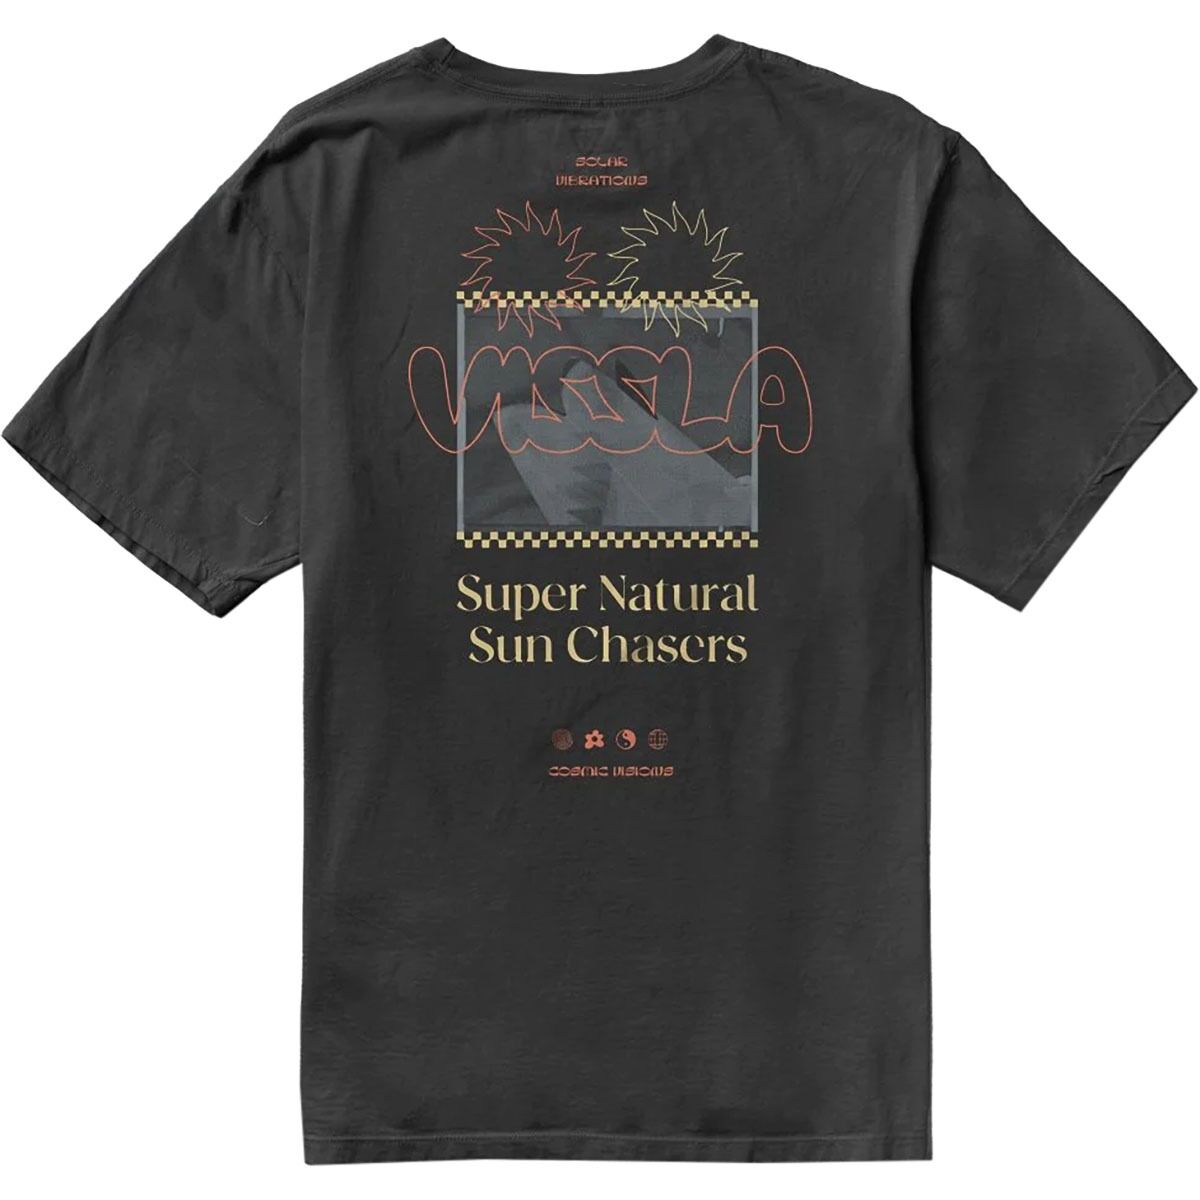 Super Cosmics Organic T-Shirt - Men